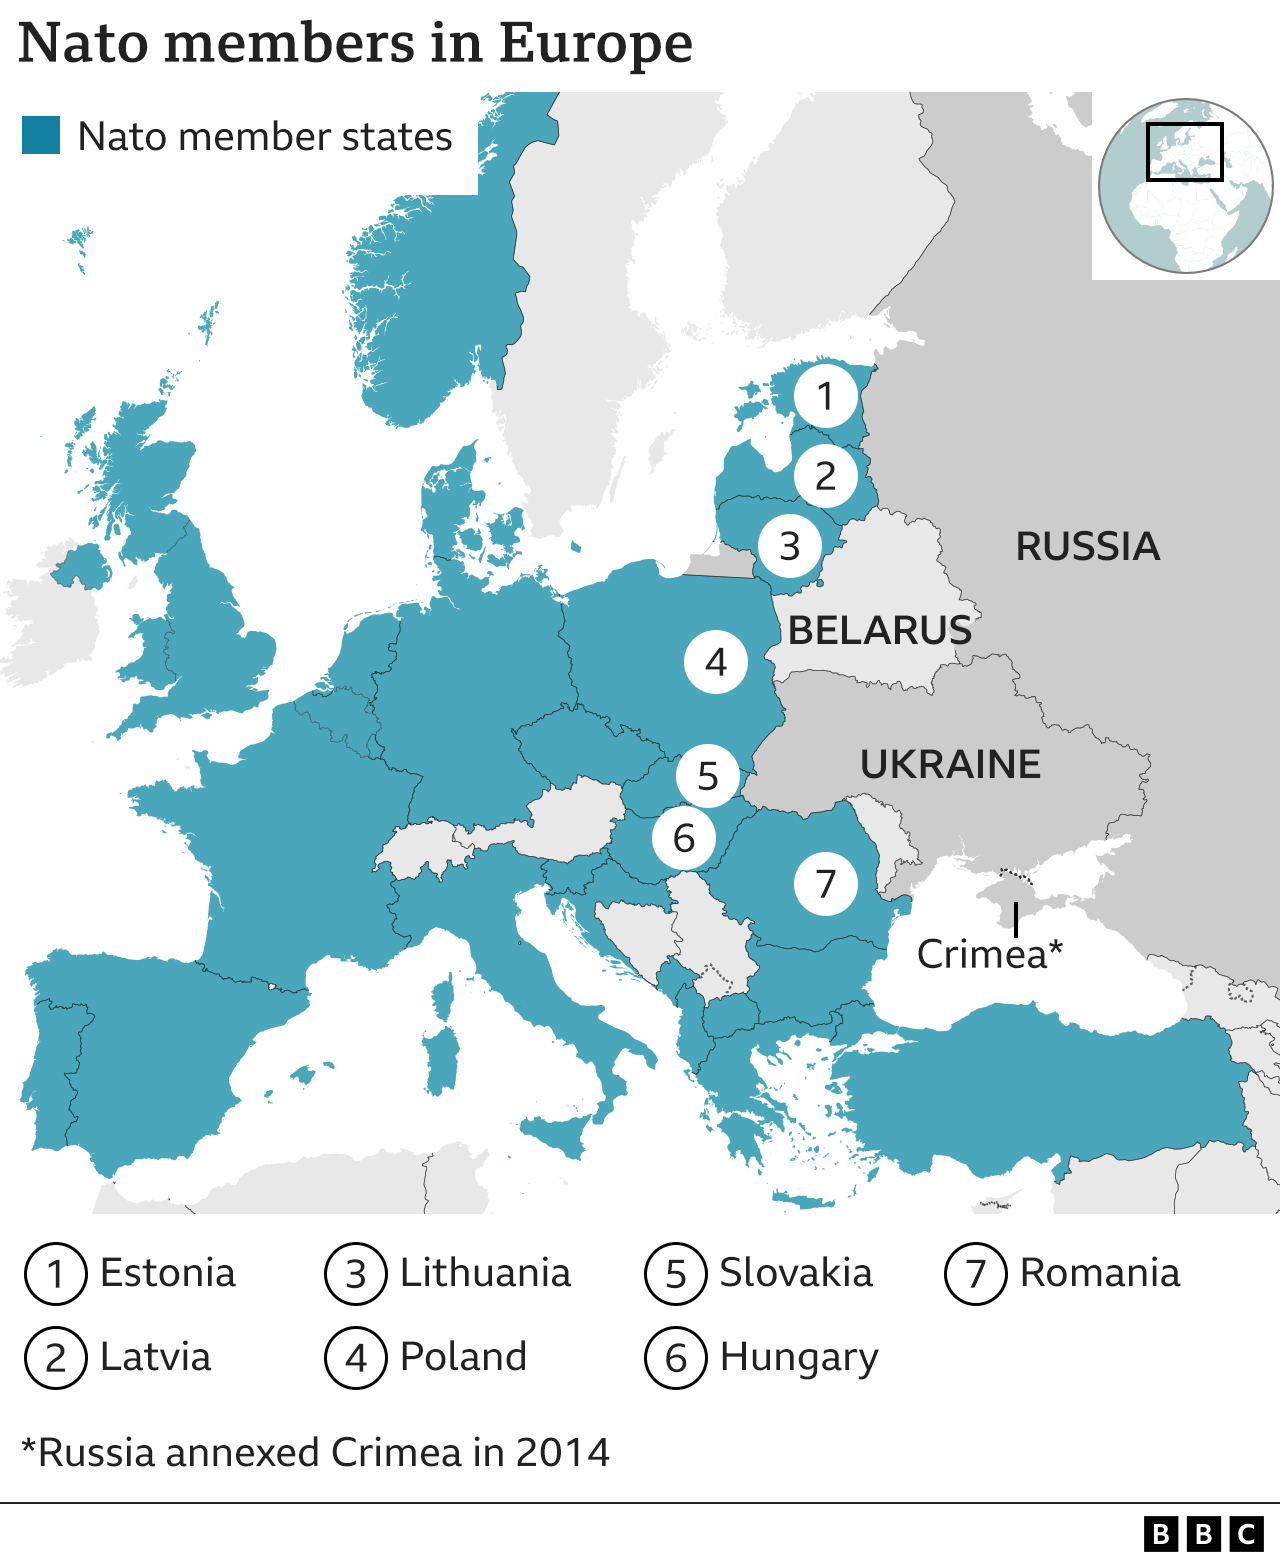 Harta NATO în Europa de Est